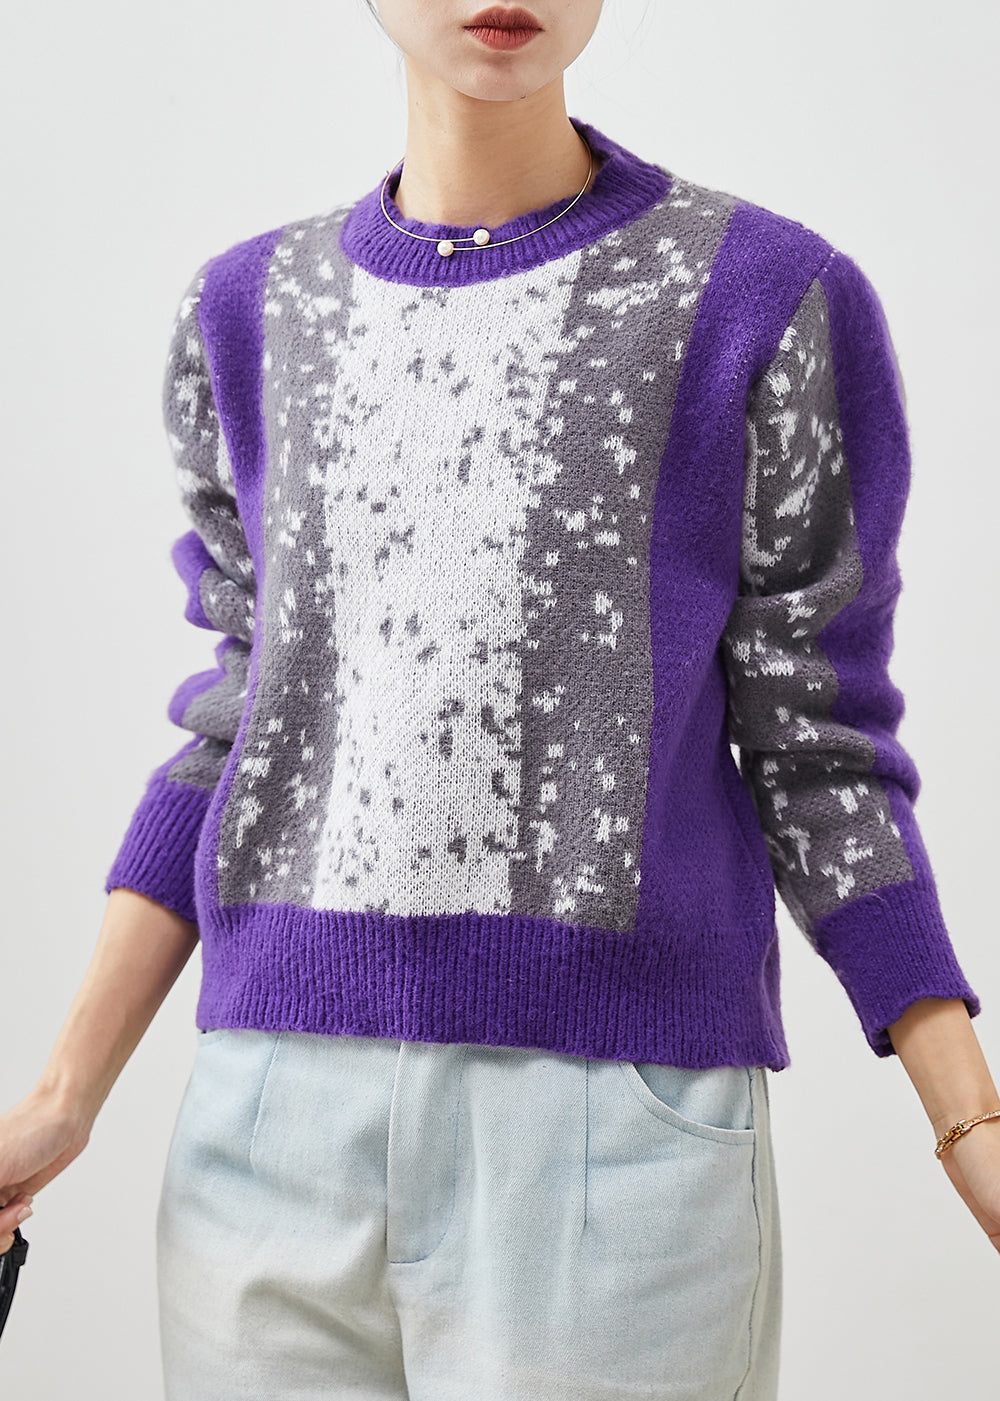 French Purple Tie Dye Warm Knit Sweater Winter